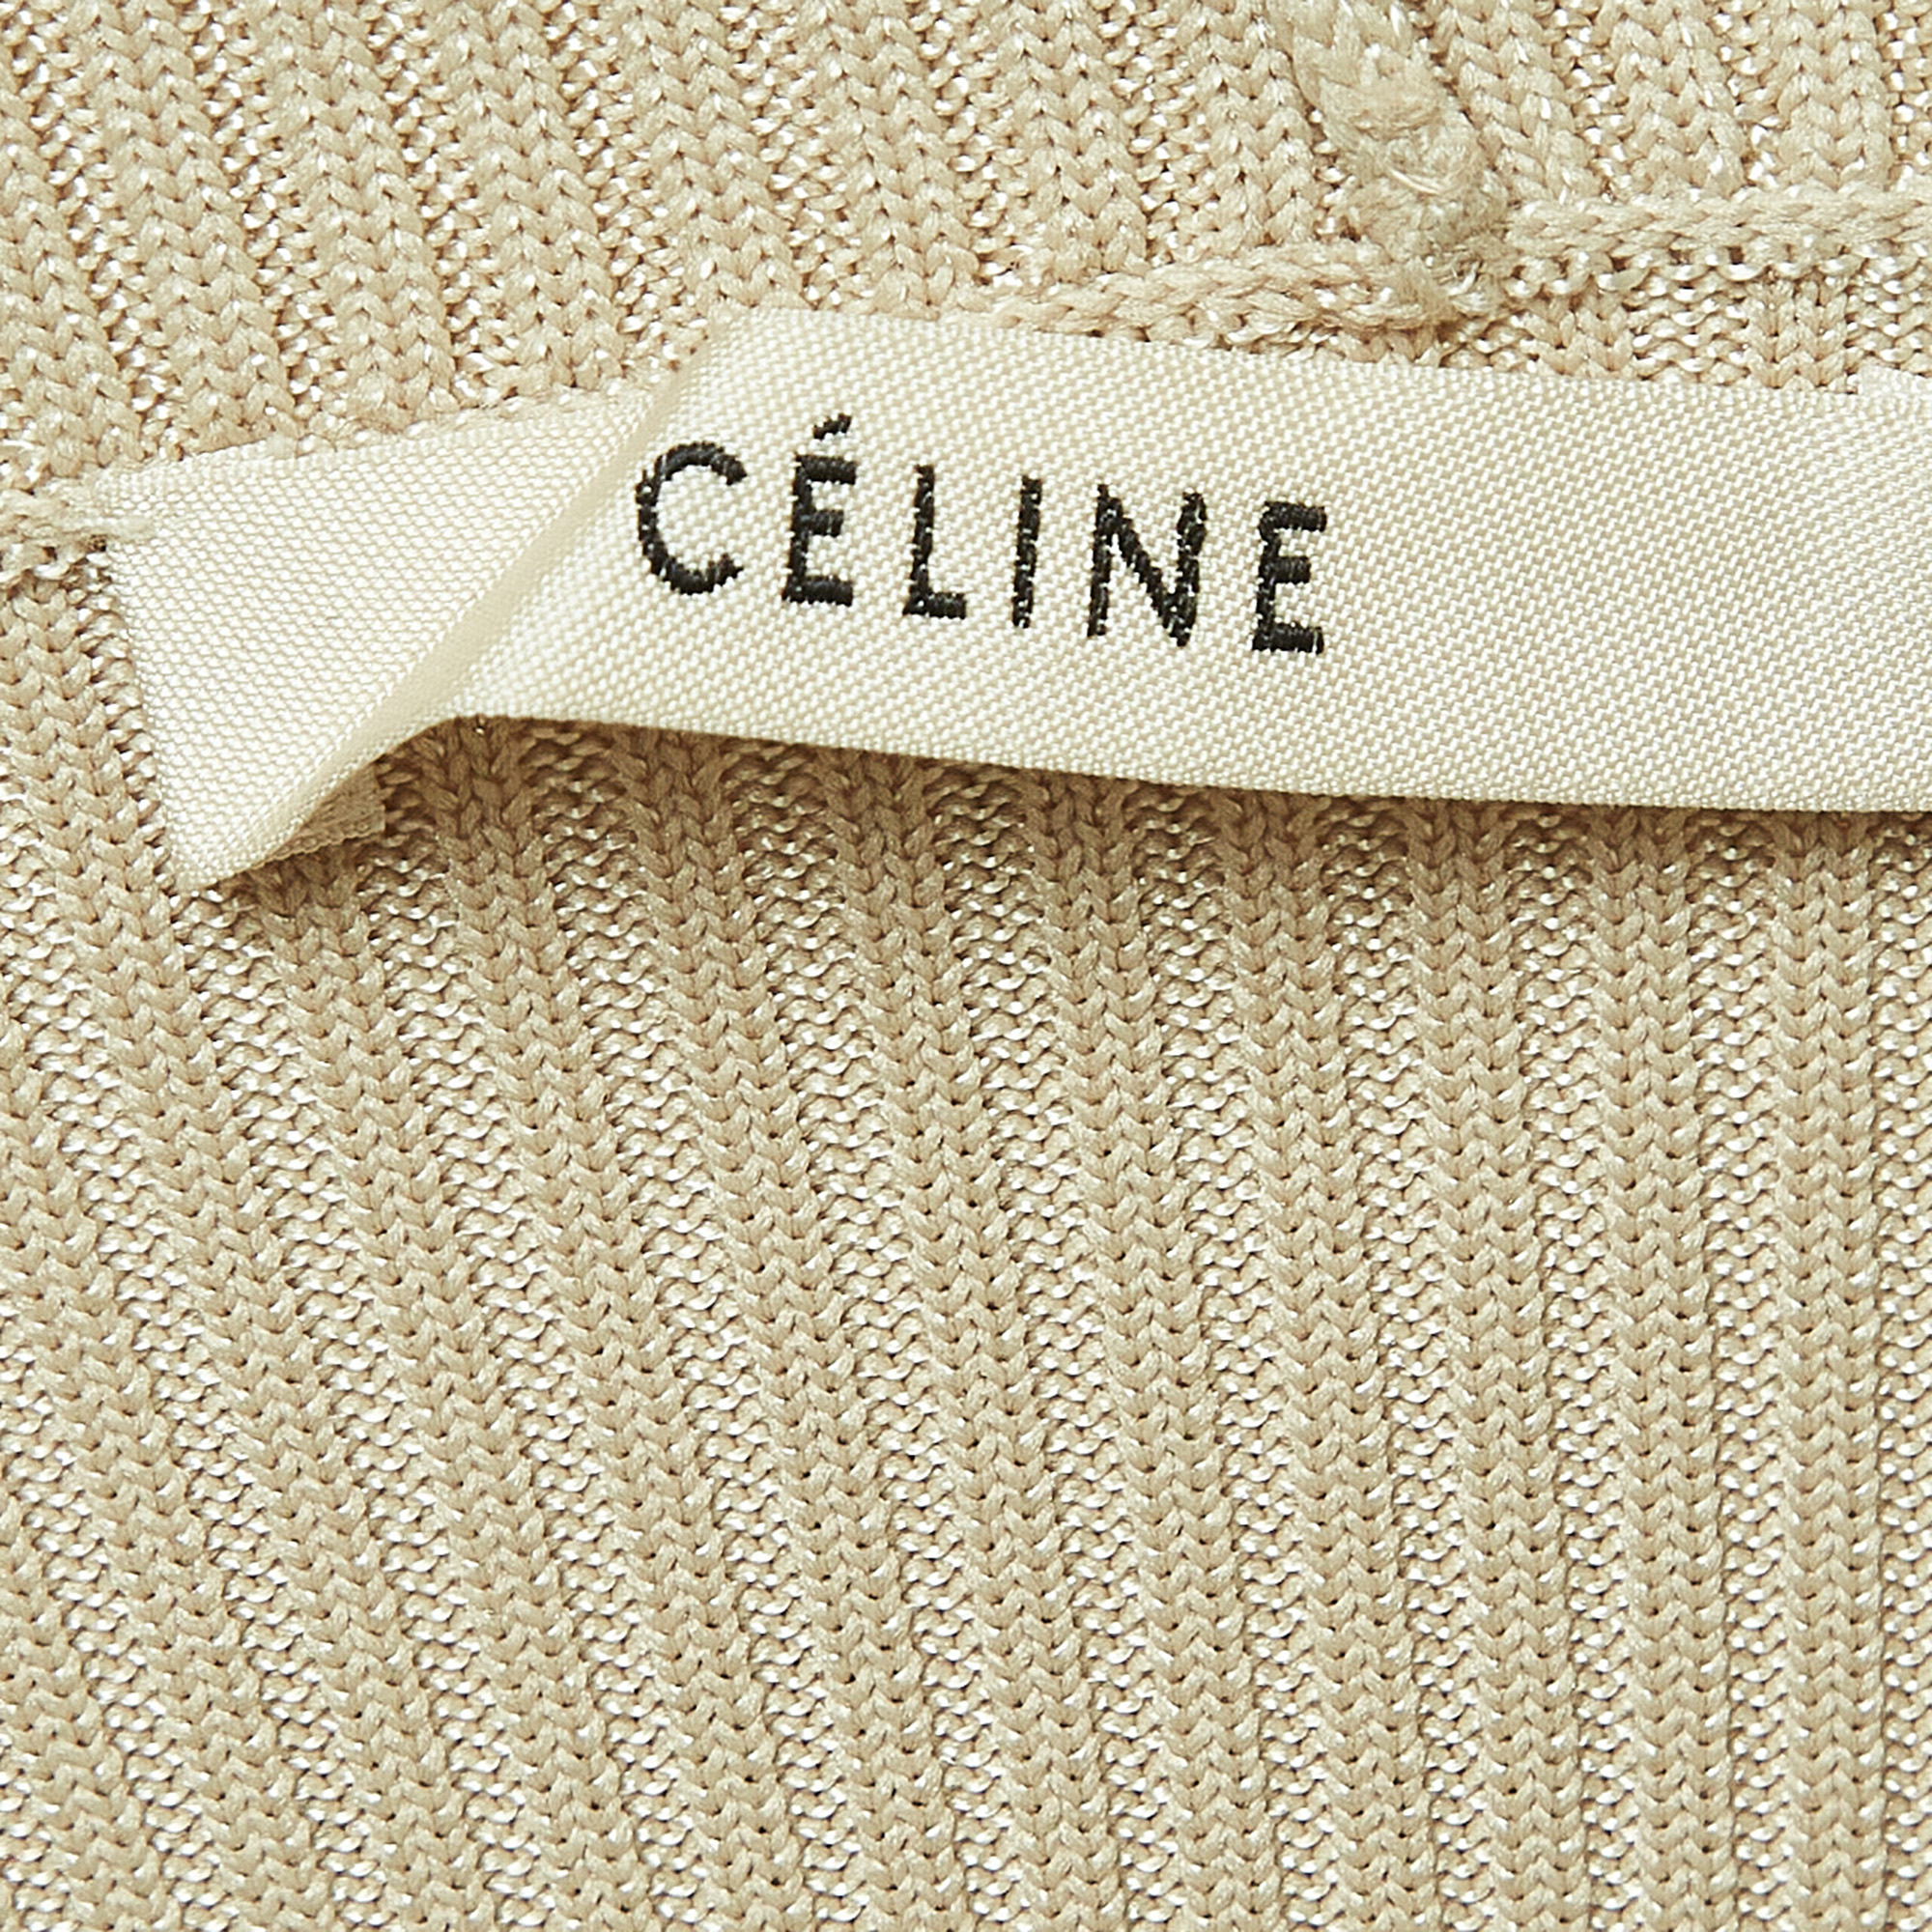 Celine Beige Knit Turtle Neck Mini Dress S